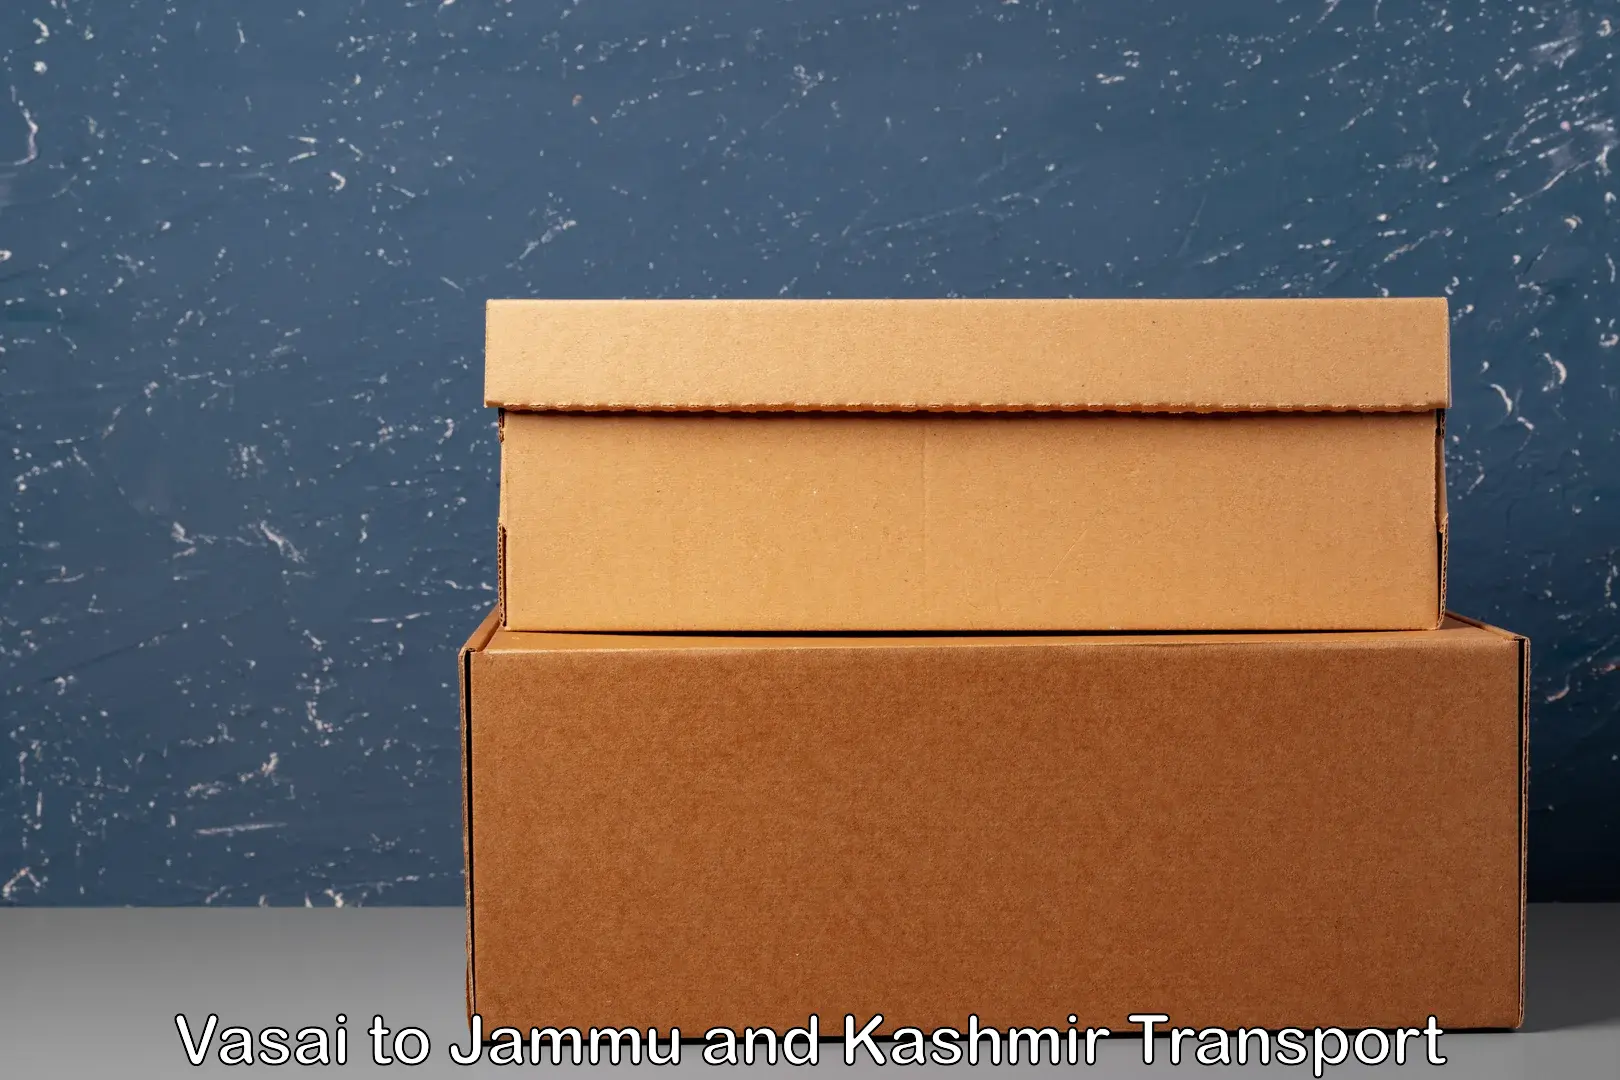 Cargo transportation services Vasai to Jammu and Kashmir